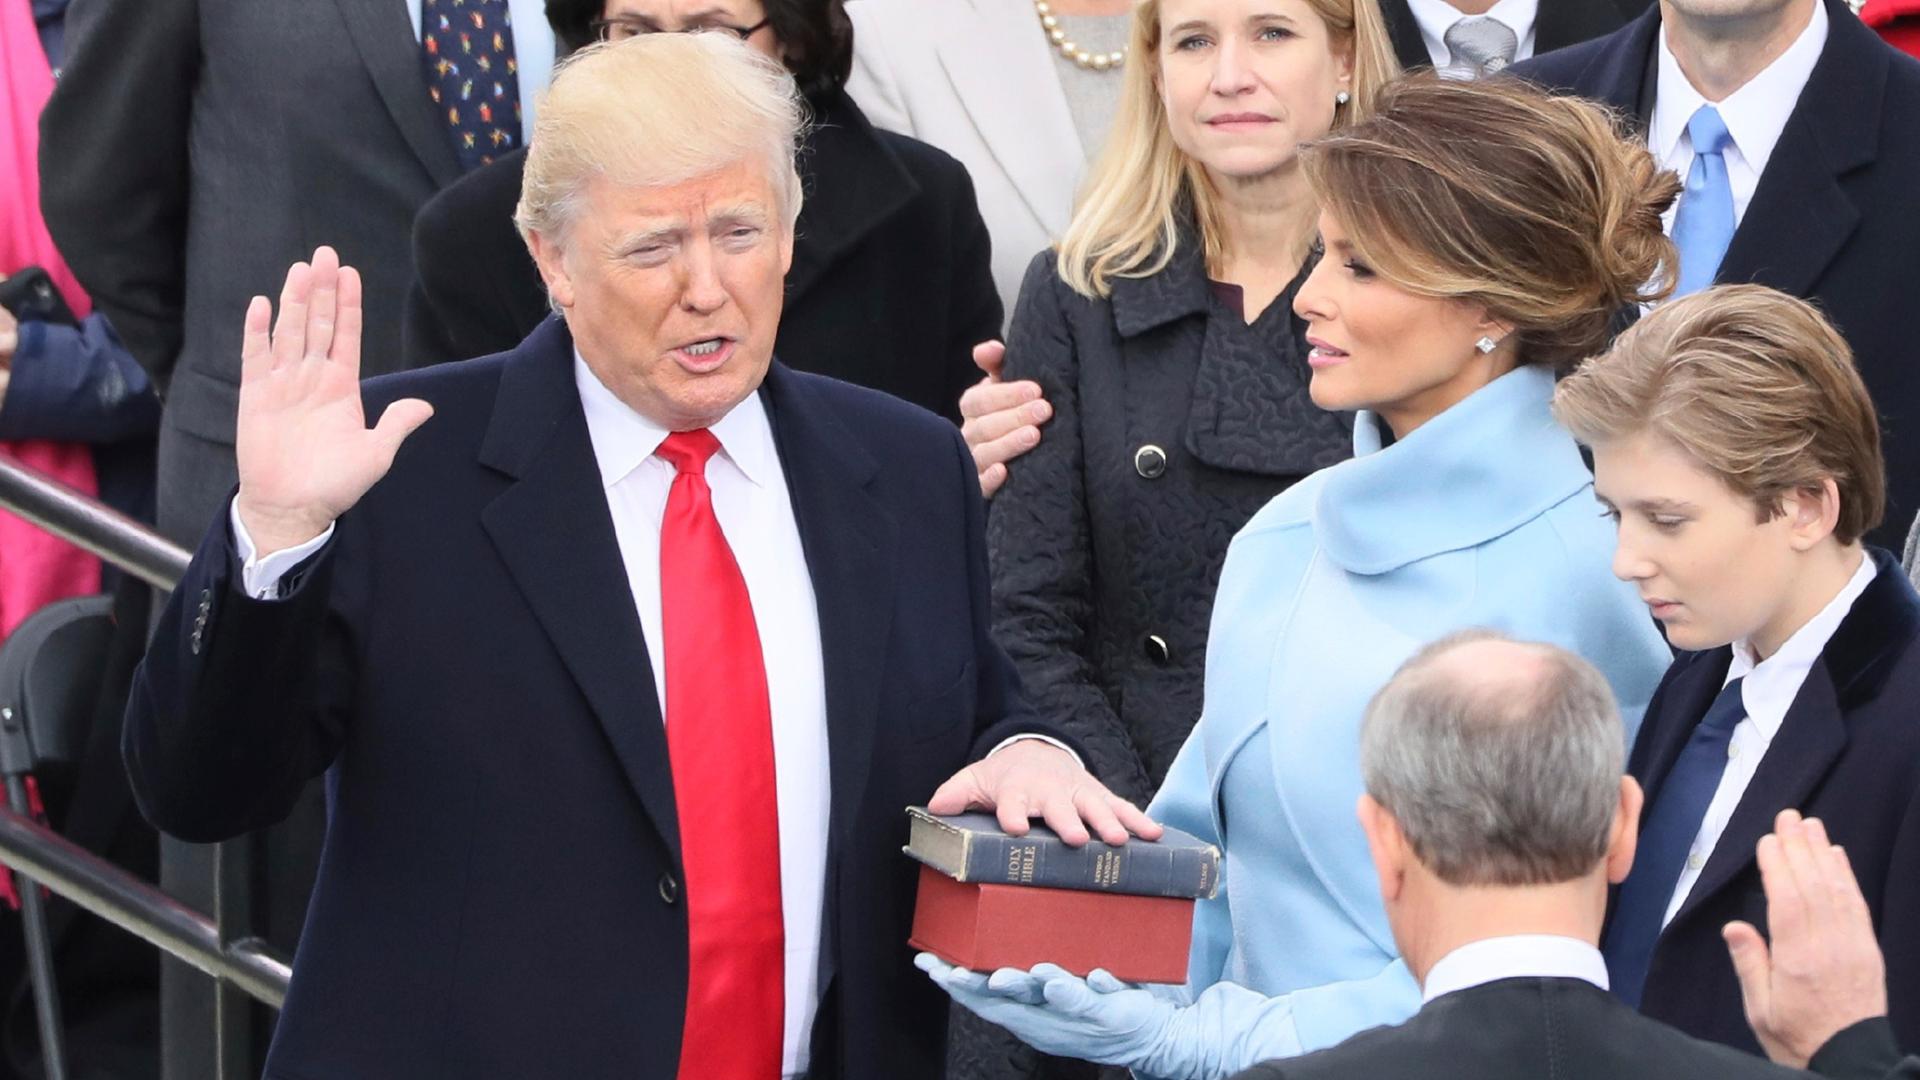 Donald Trump legt den Eid als US-Präsident ab. Die rechte Hand hält er in die Höhe, die linke liegt auf einer Bibel.